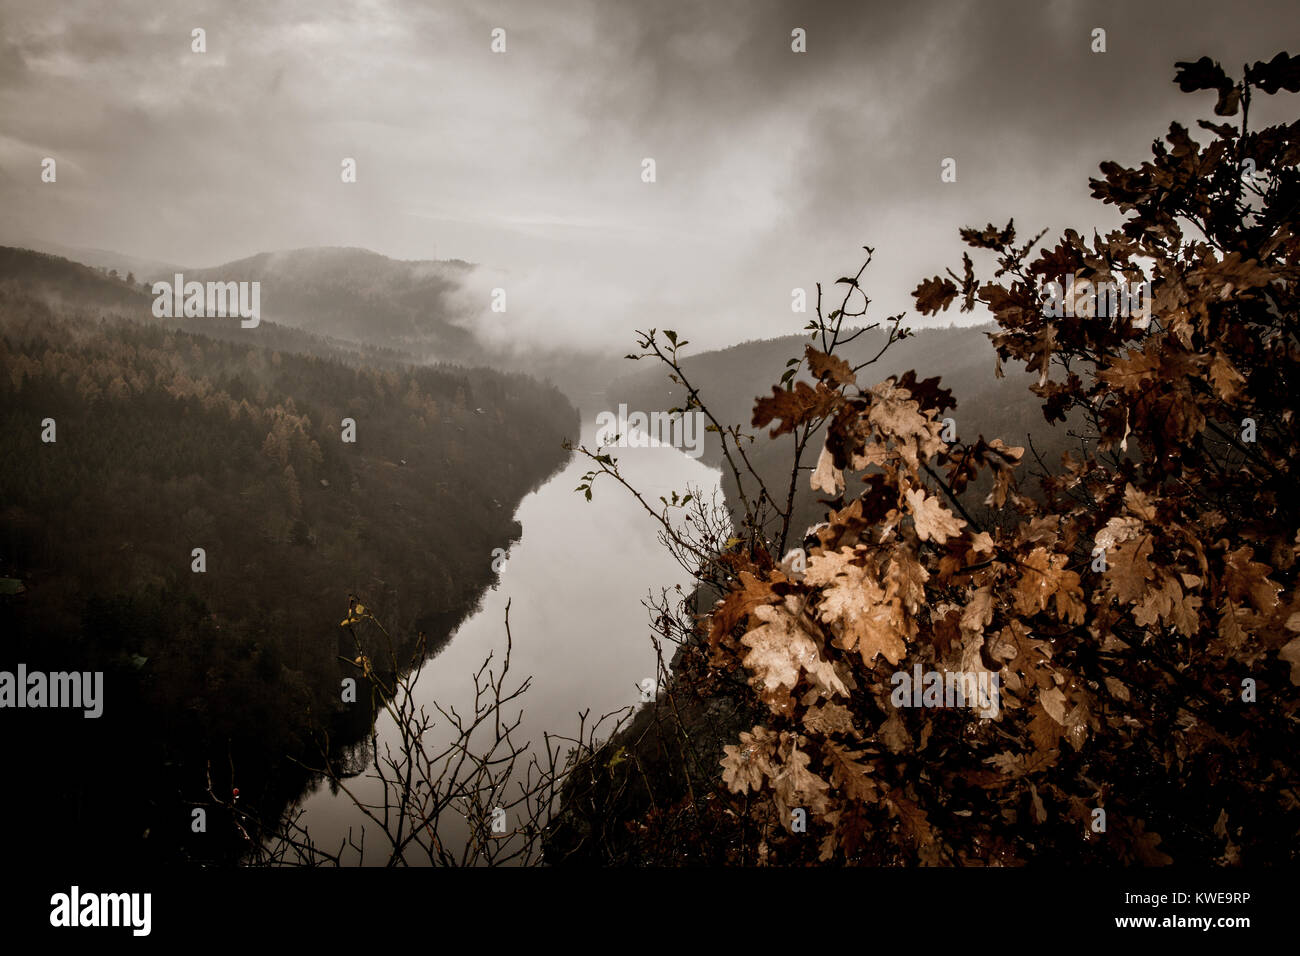 autumn wild landscape with mist Stock Photo